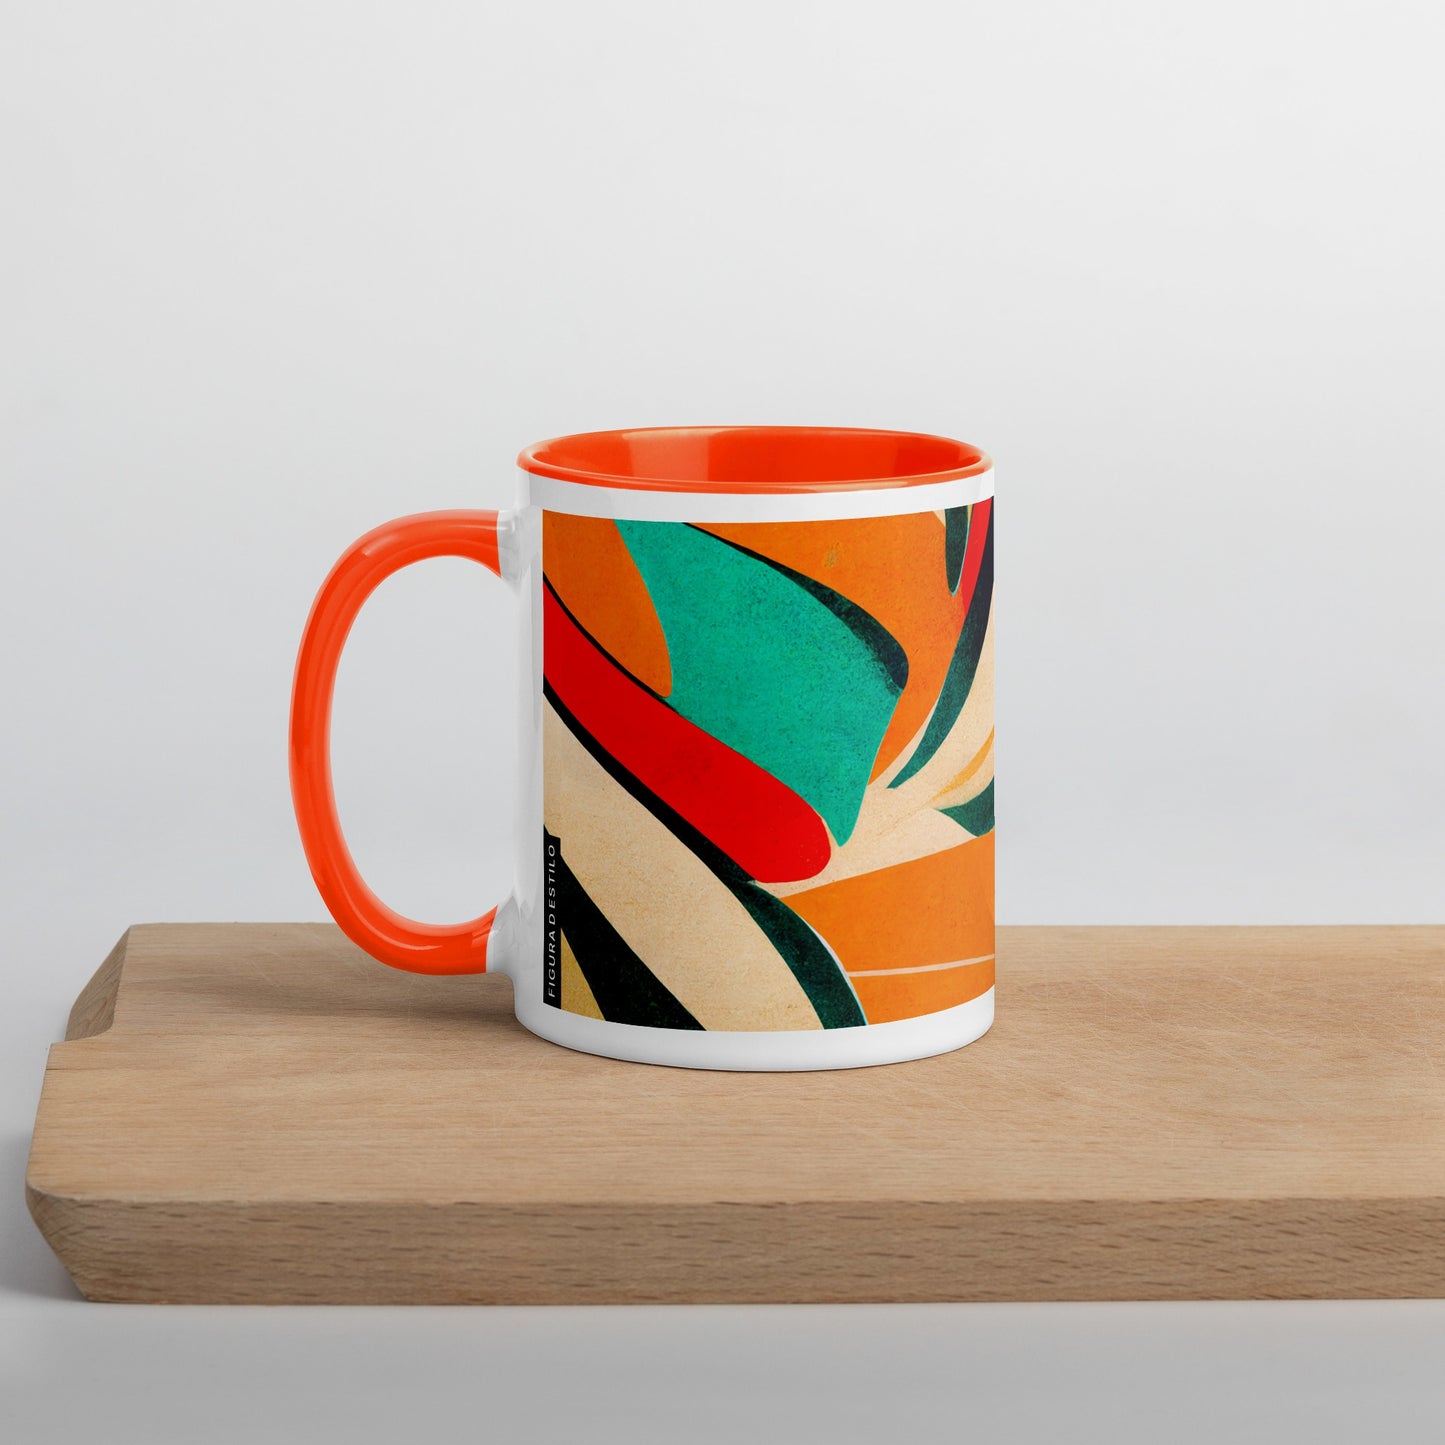 Hot Forest Ceramic Mug with Color Inside